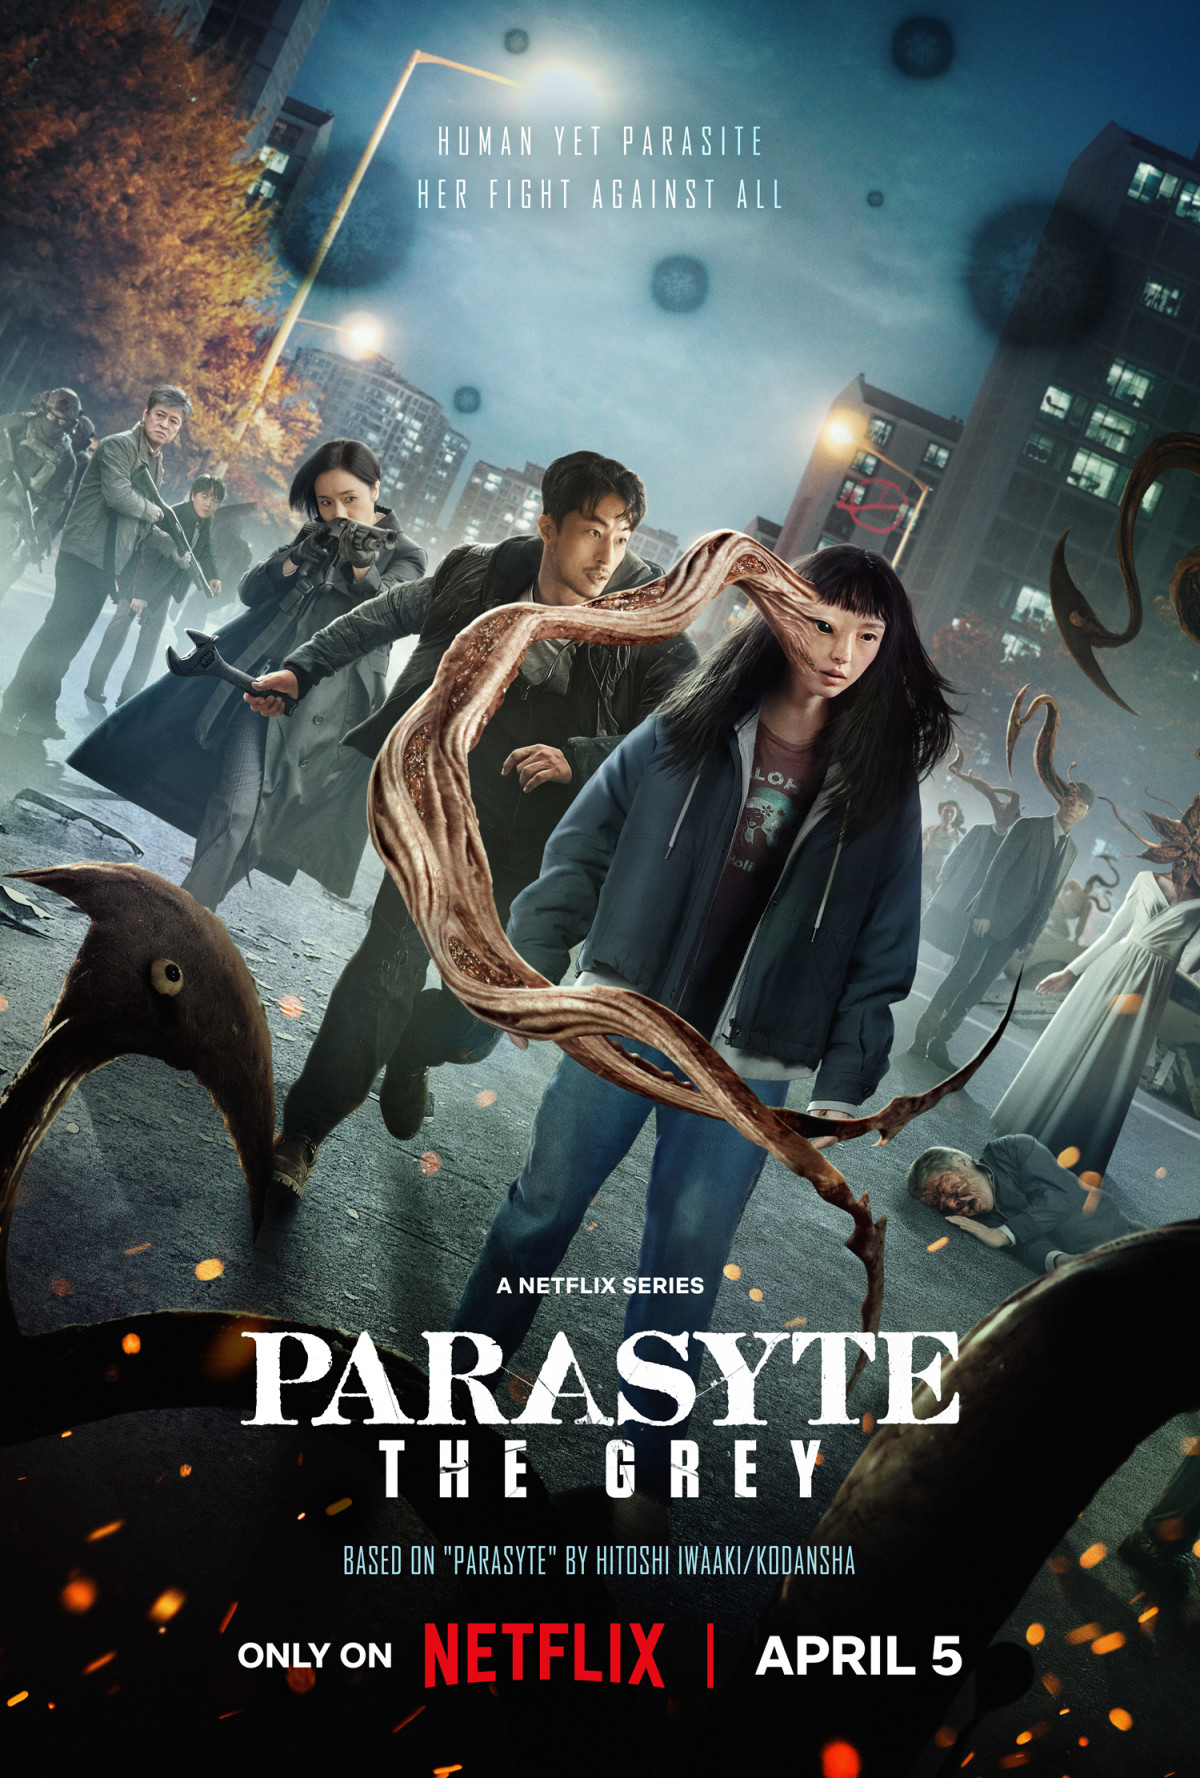 Netflix's Parasyte: The Grey